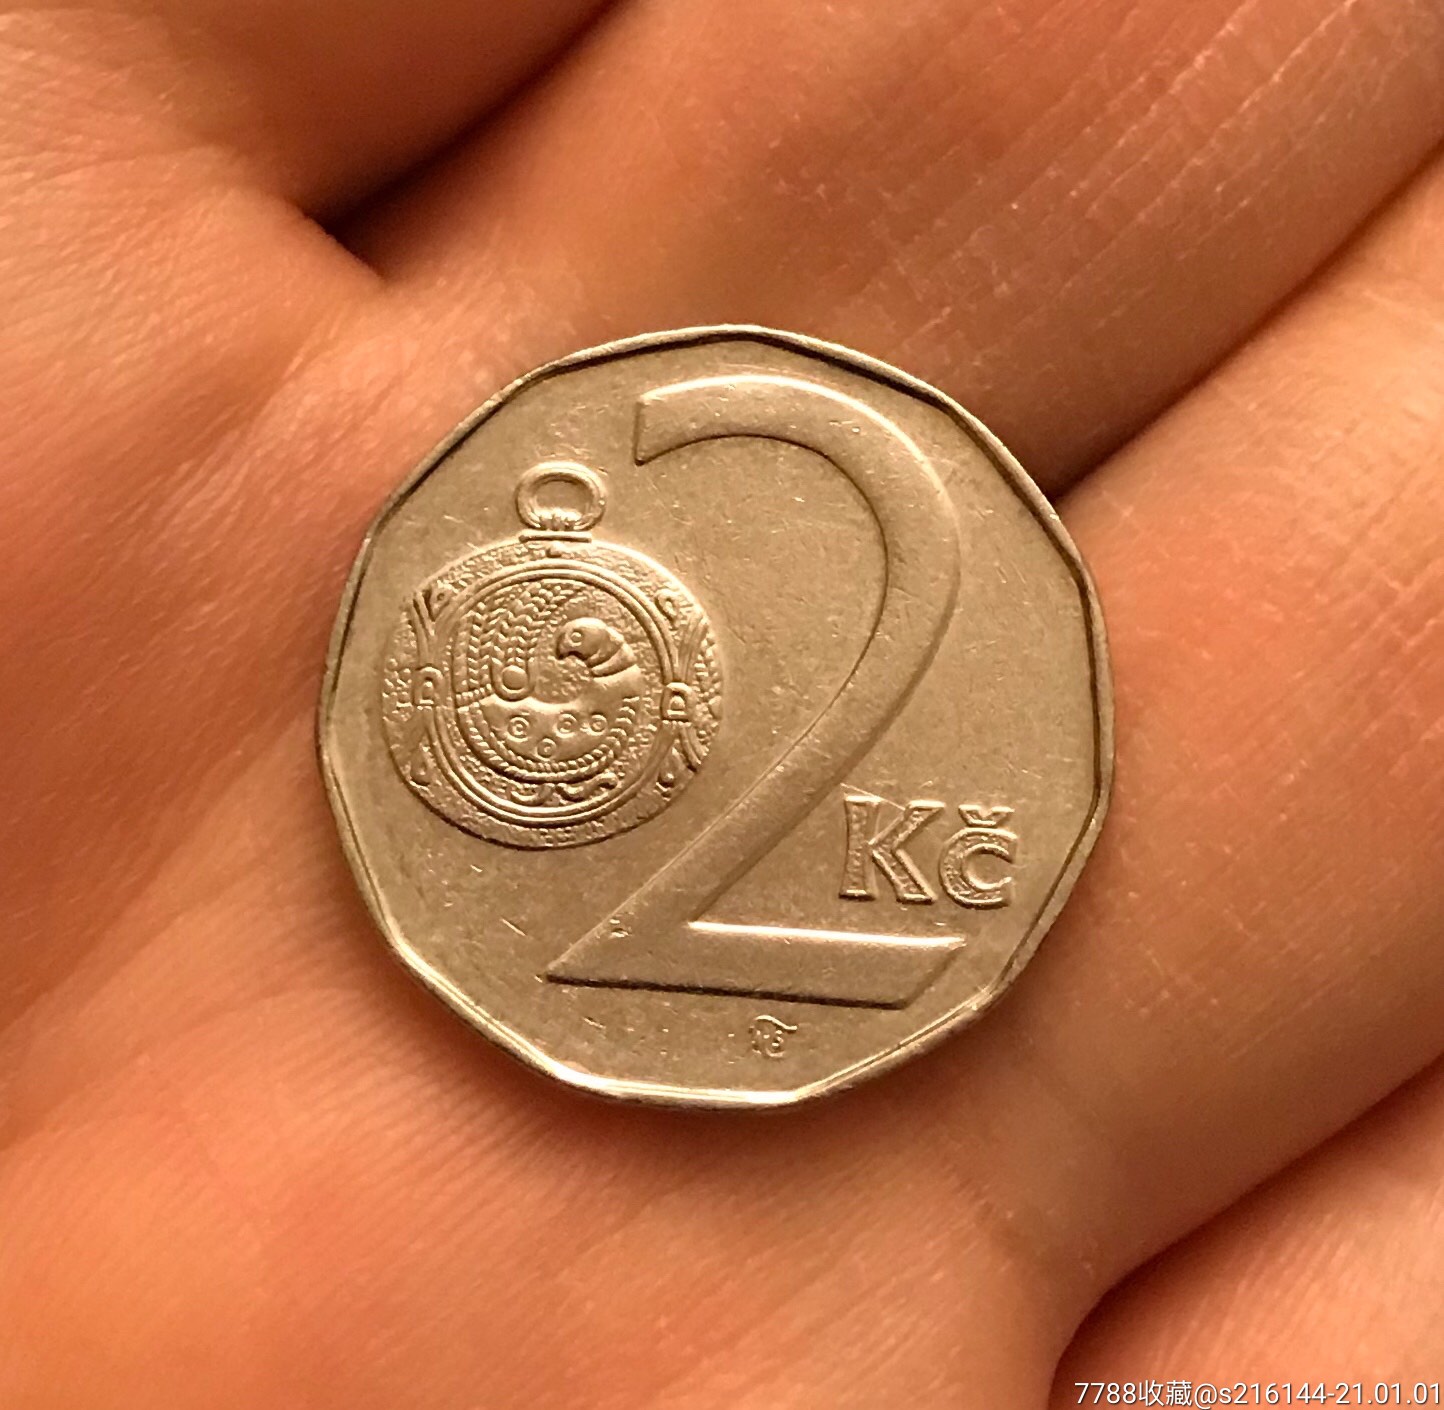 1994年捷克硬币2克朗